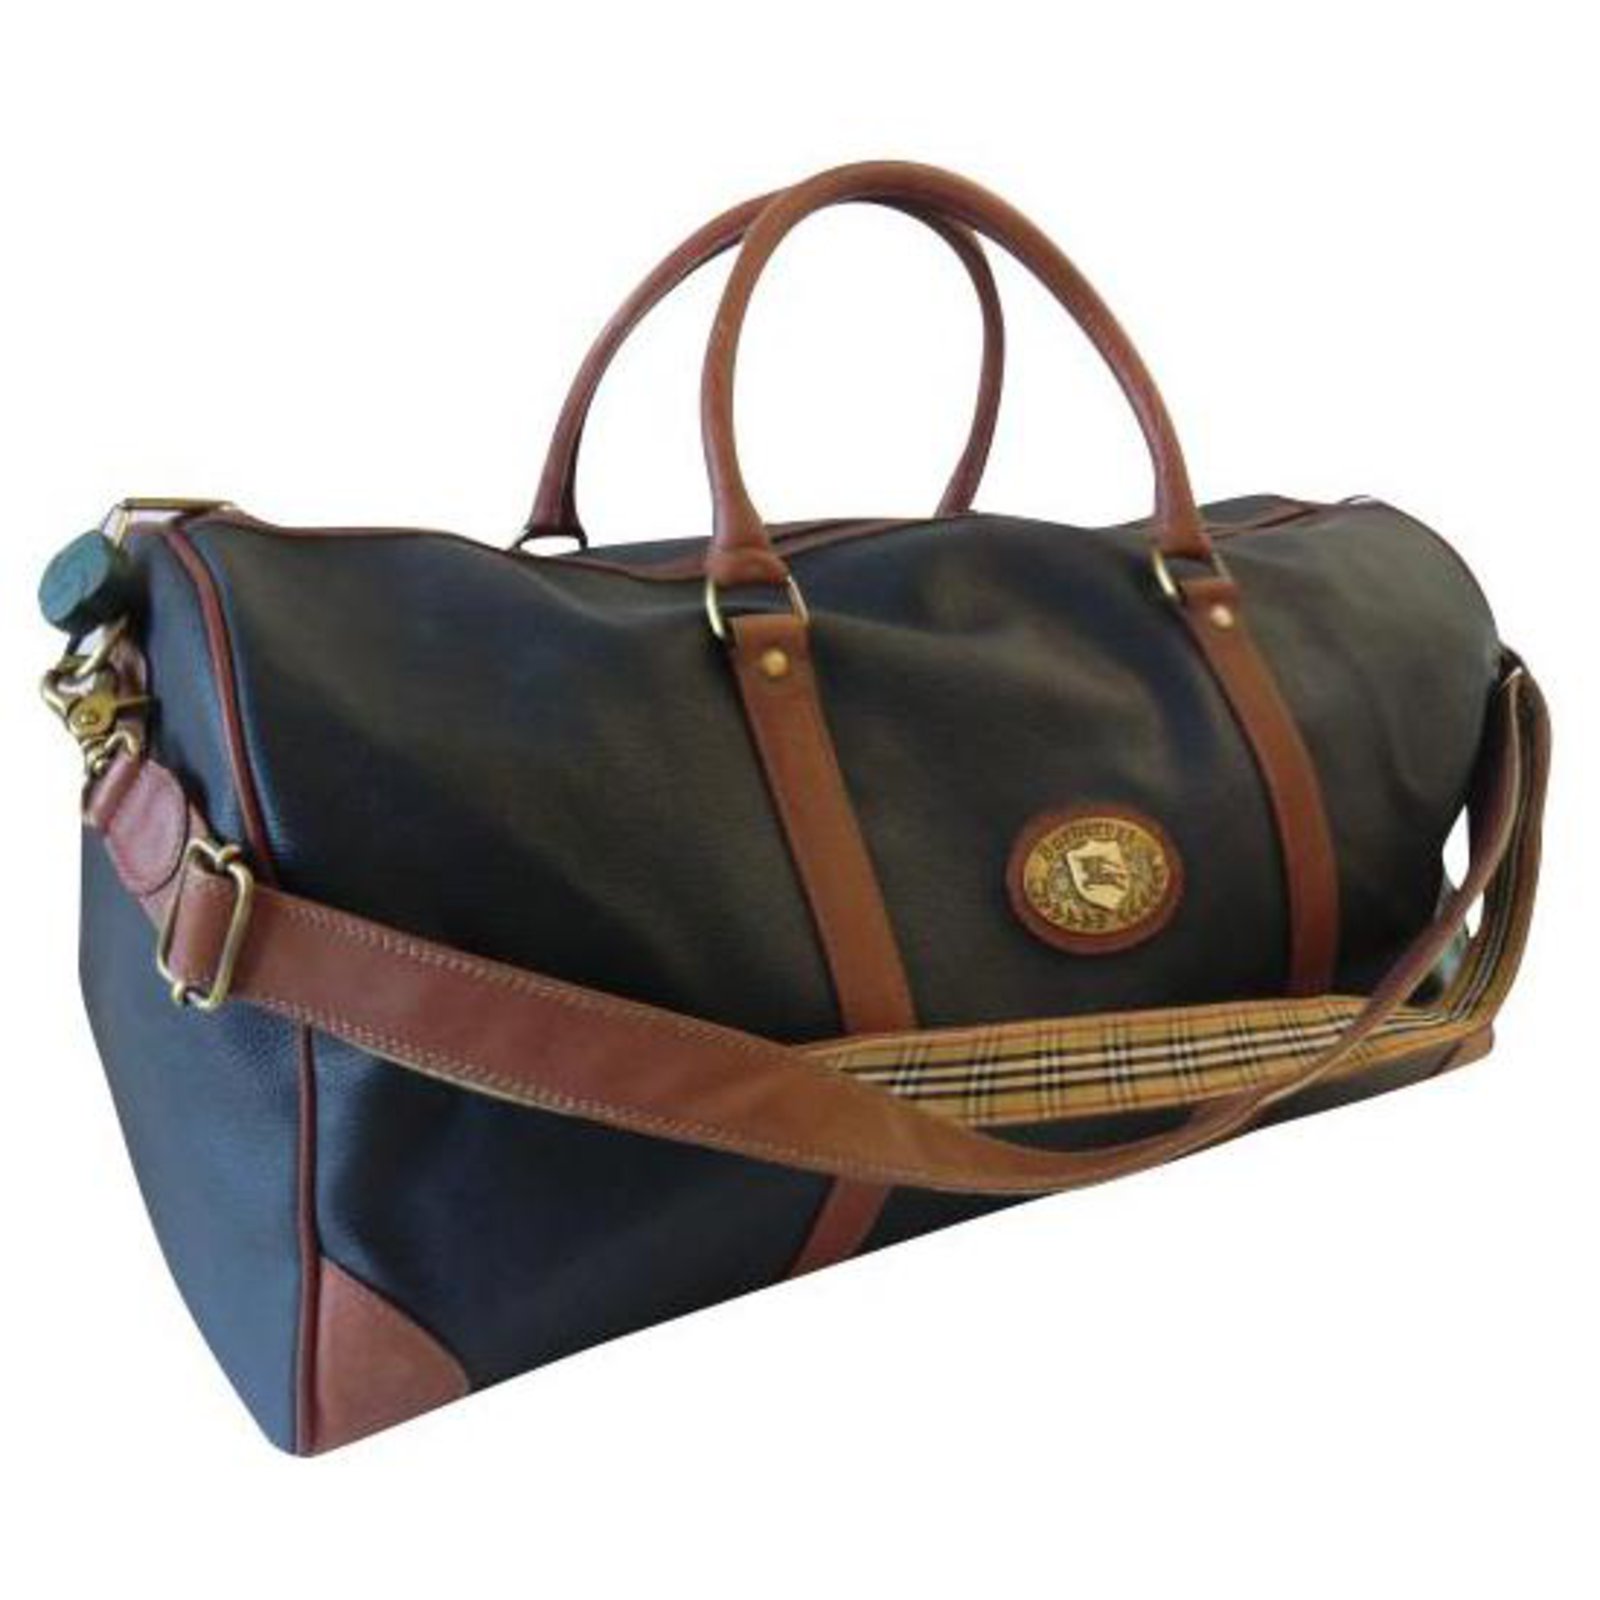 Burberry Burberry Travel Bag Bags 